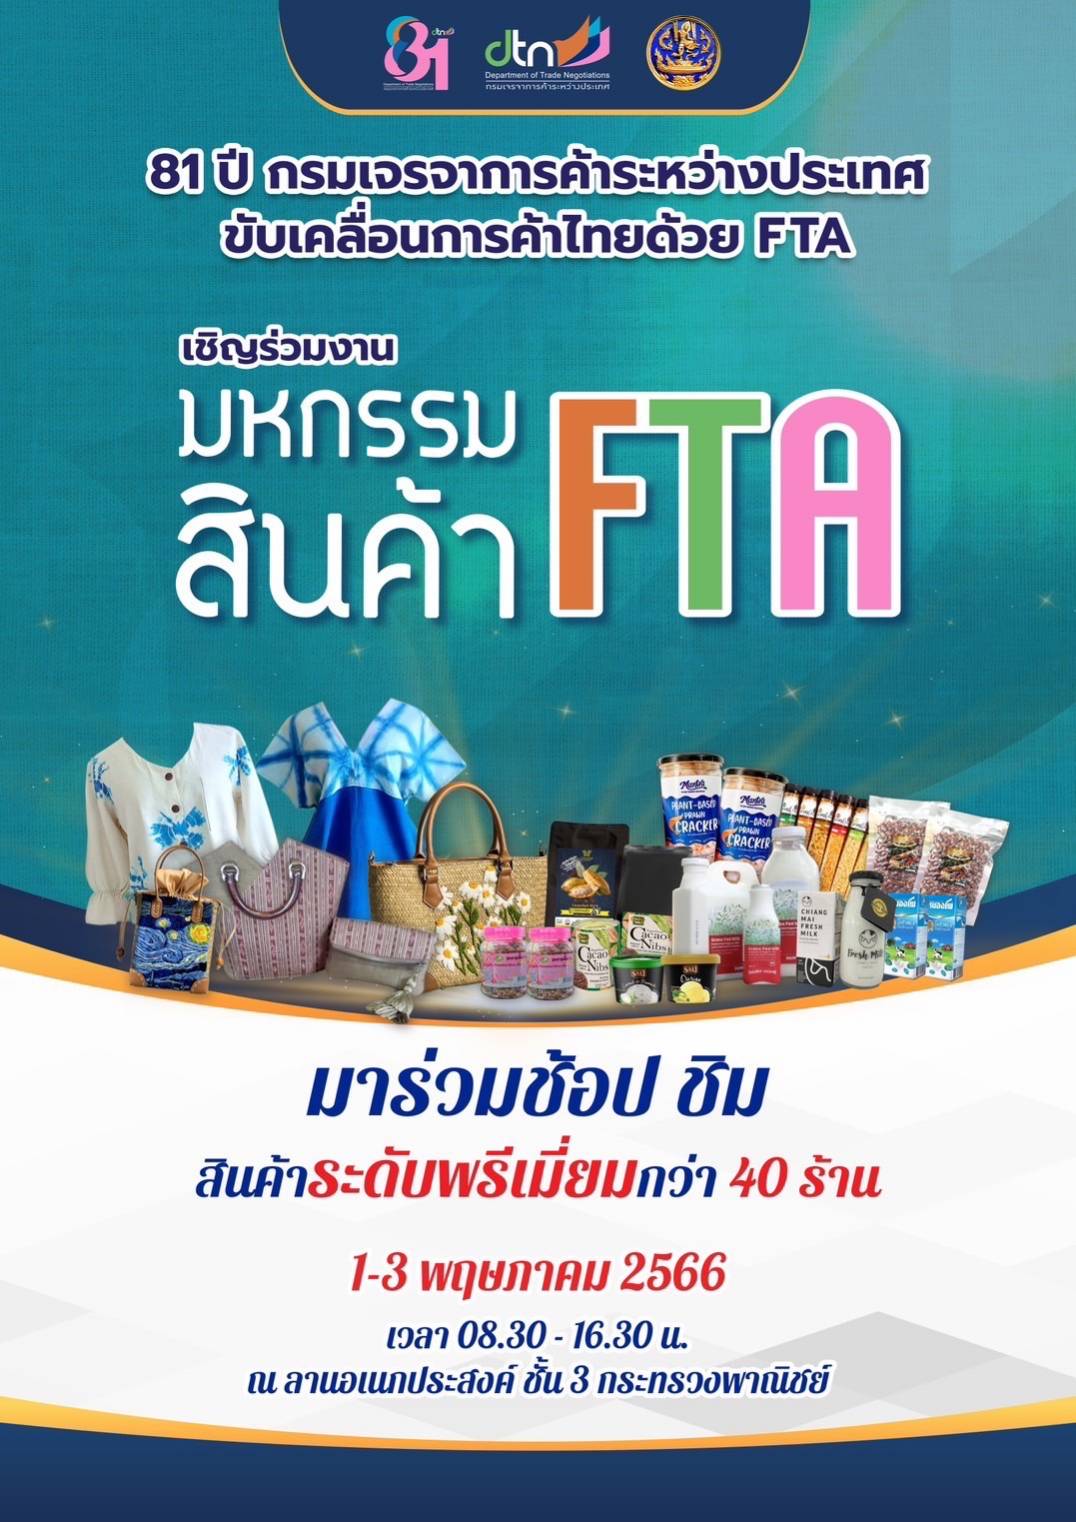 81 ปี กรมเจรจาการค้าระหว่างประเทศ ขับเคลื่อนการค้าไทยด้วย FTA